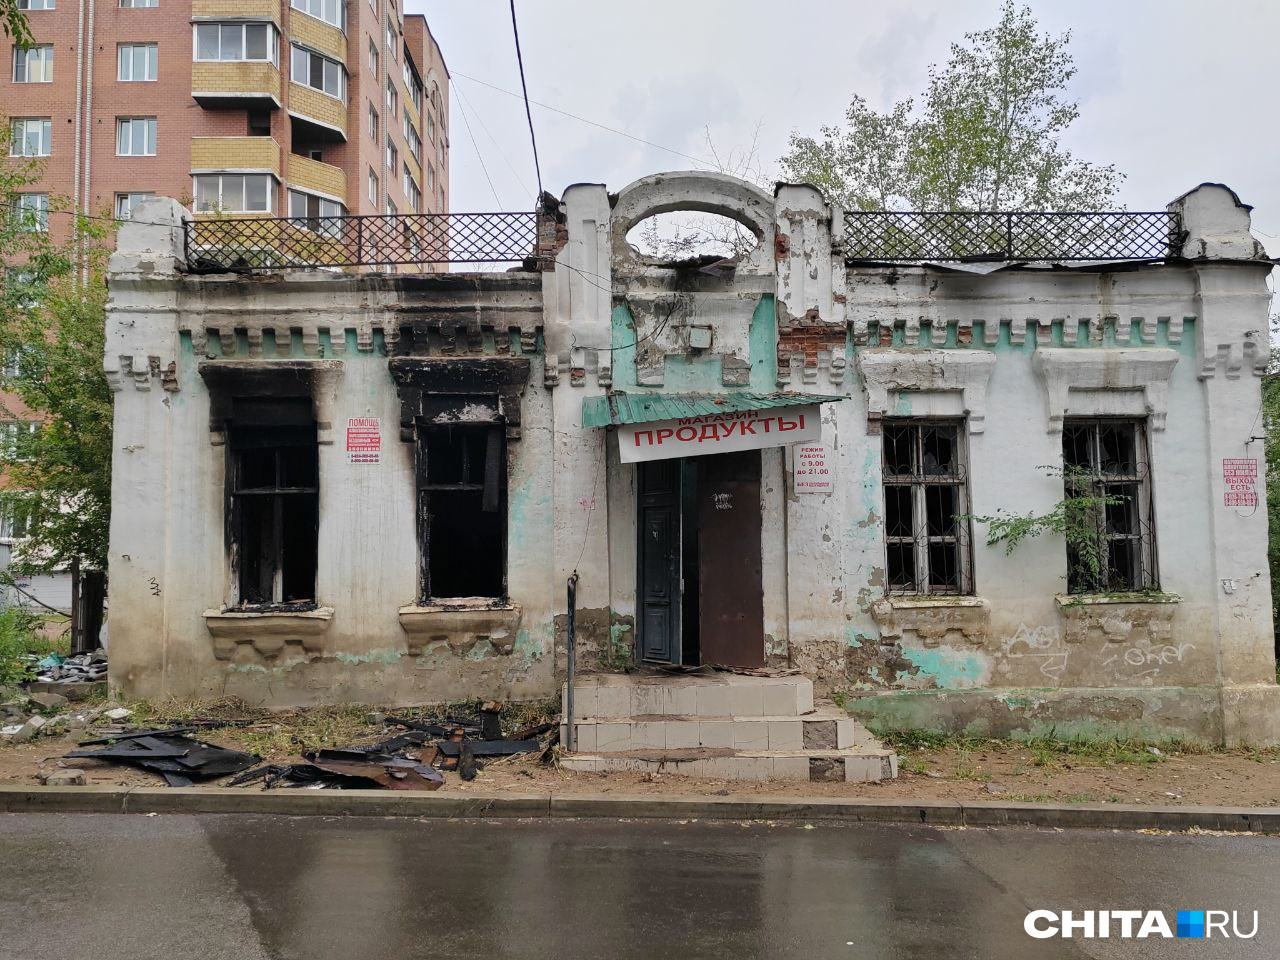 Пожар повредил треть старинного здания в Чите